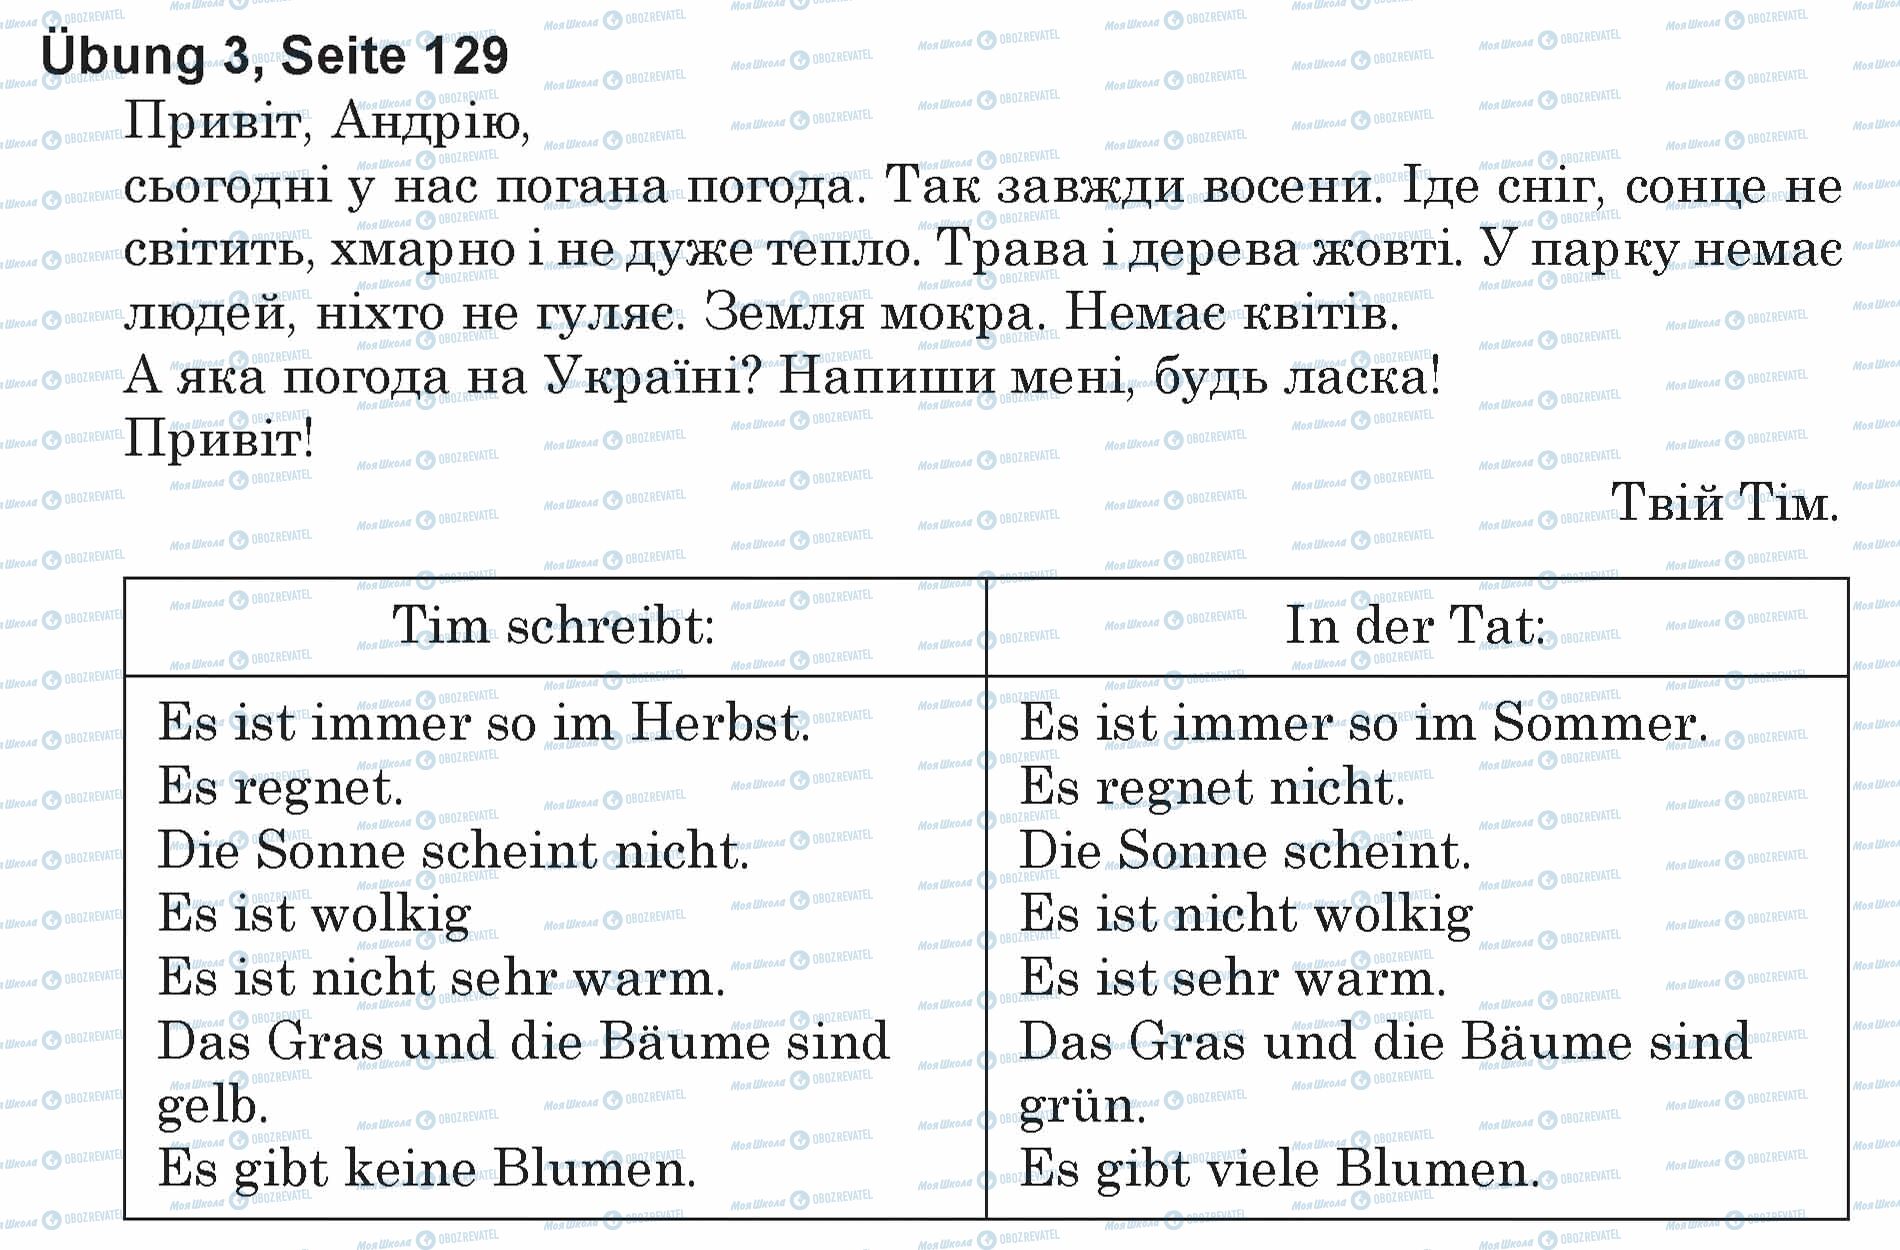 ГДЗ Немецкий язык 5 класс страница Ubung 3, Seite 129